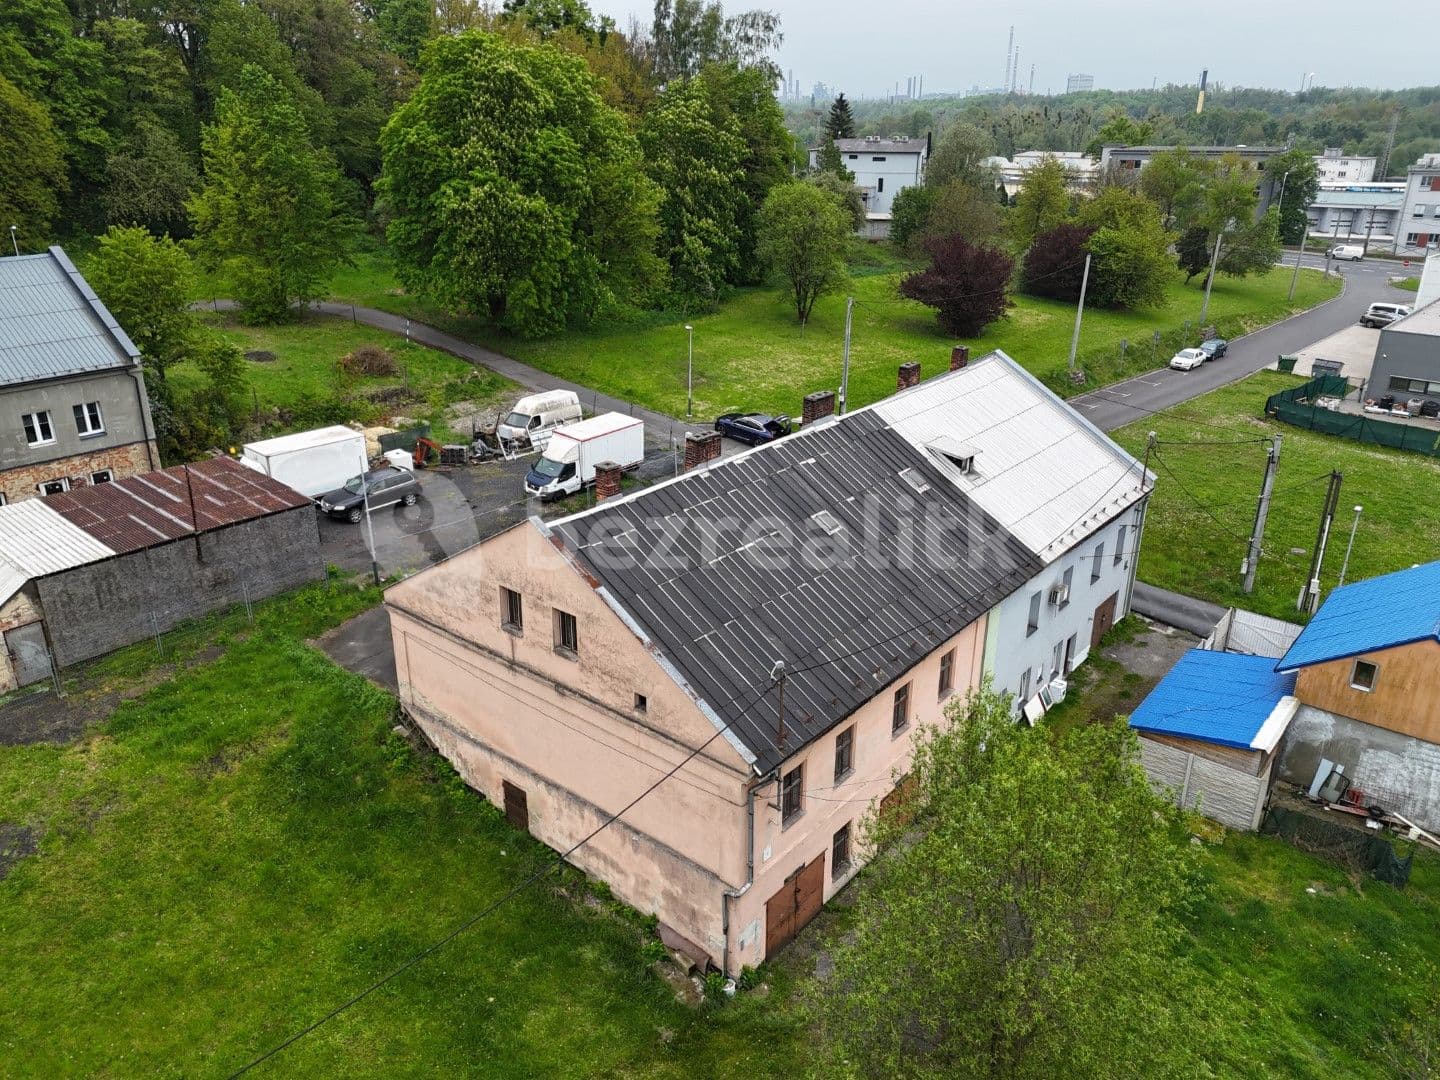 Prodej nebytového prostoru 378 m², Jan Marie, Ostrava, Moravskoslezský kraj